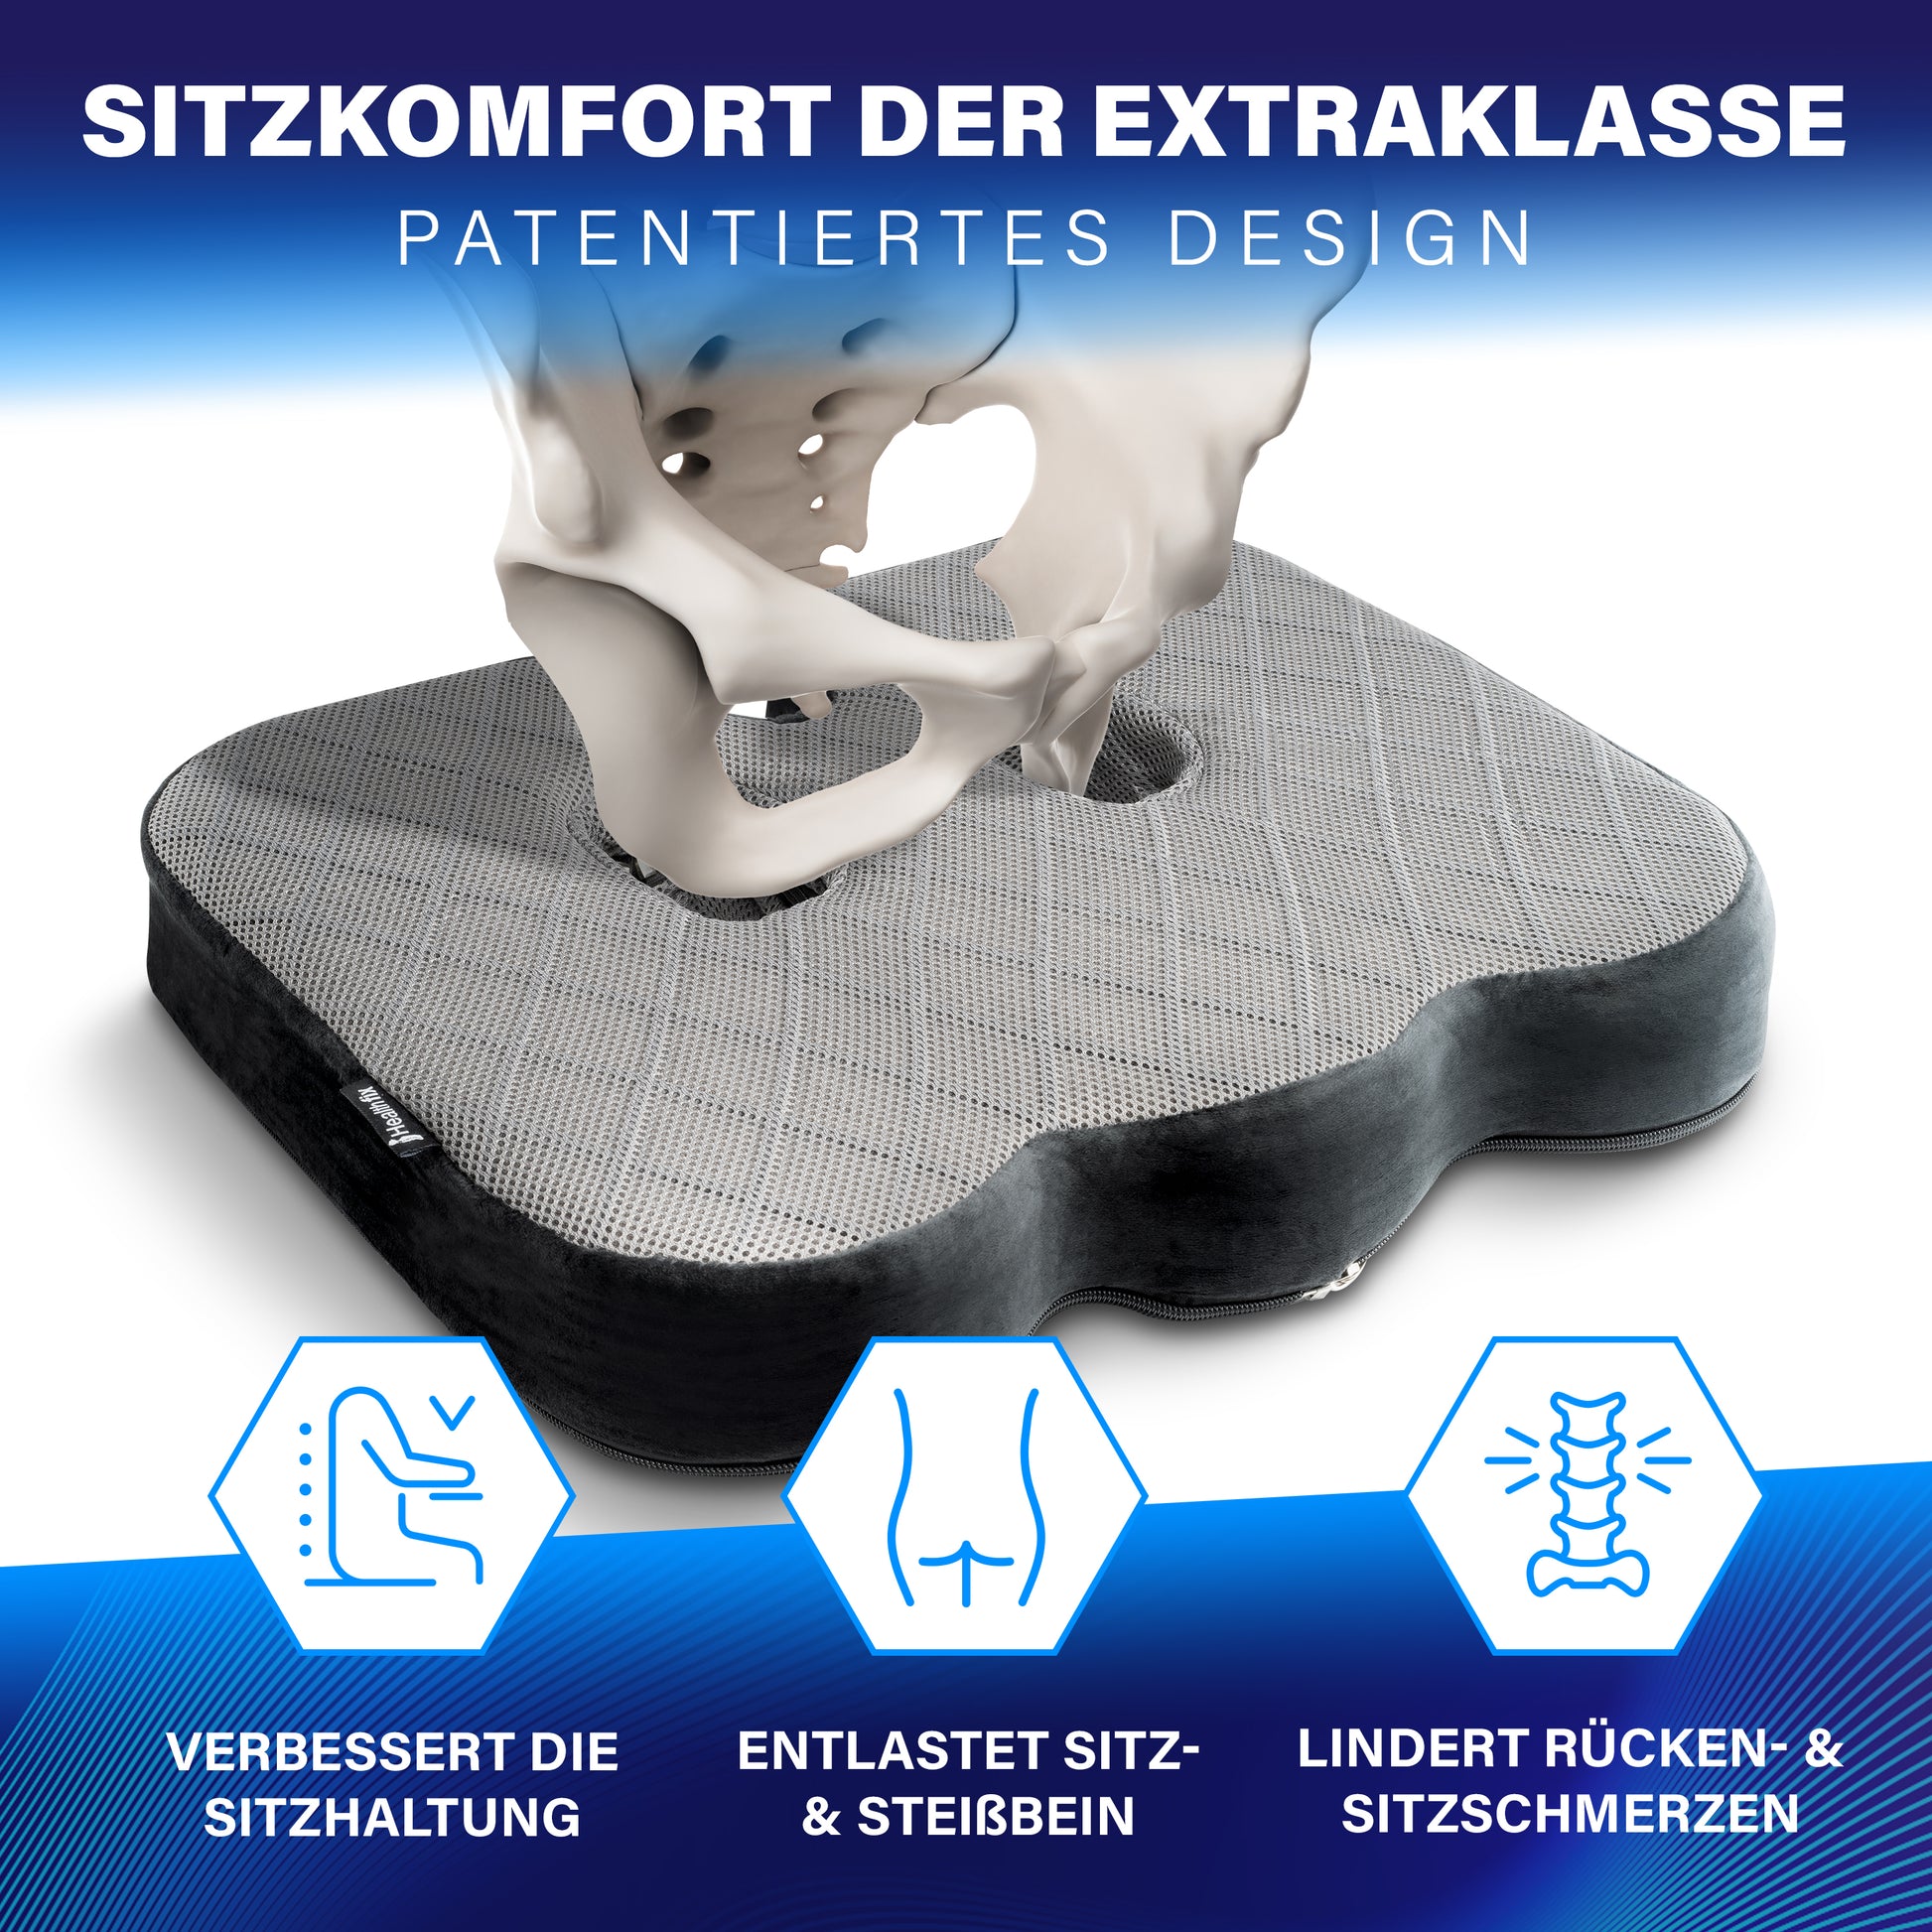 Orthopädisches Sitzkissen - Entlastung für Wirbelsäule und Rücken –  Healthfix